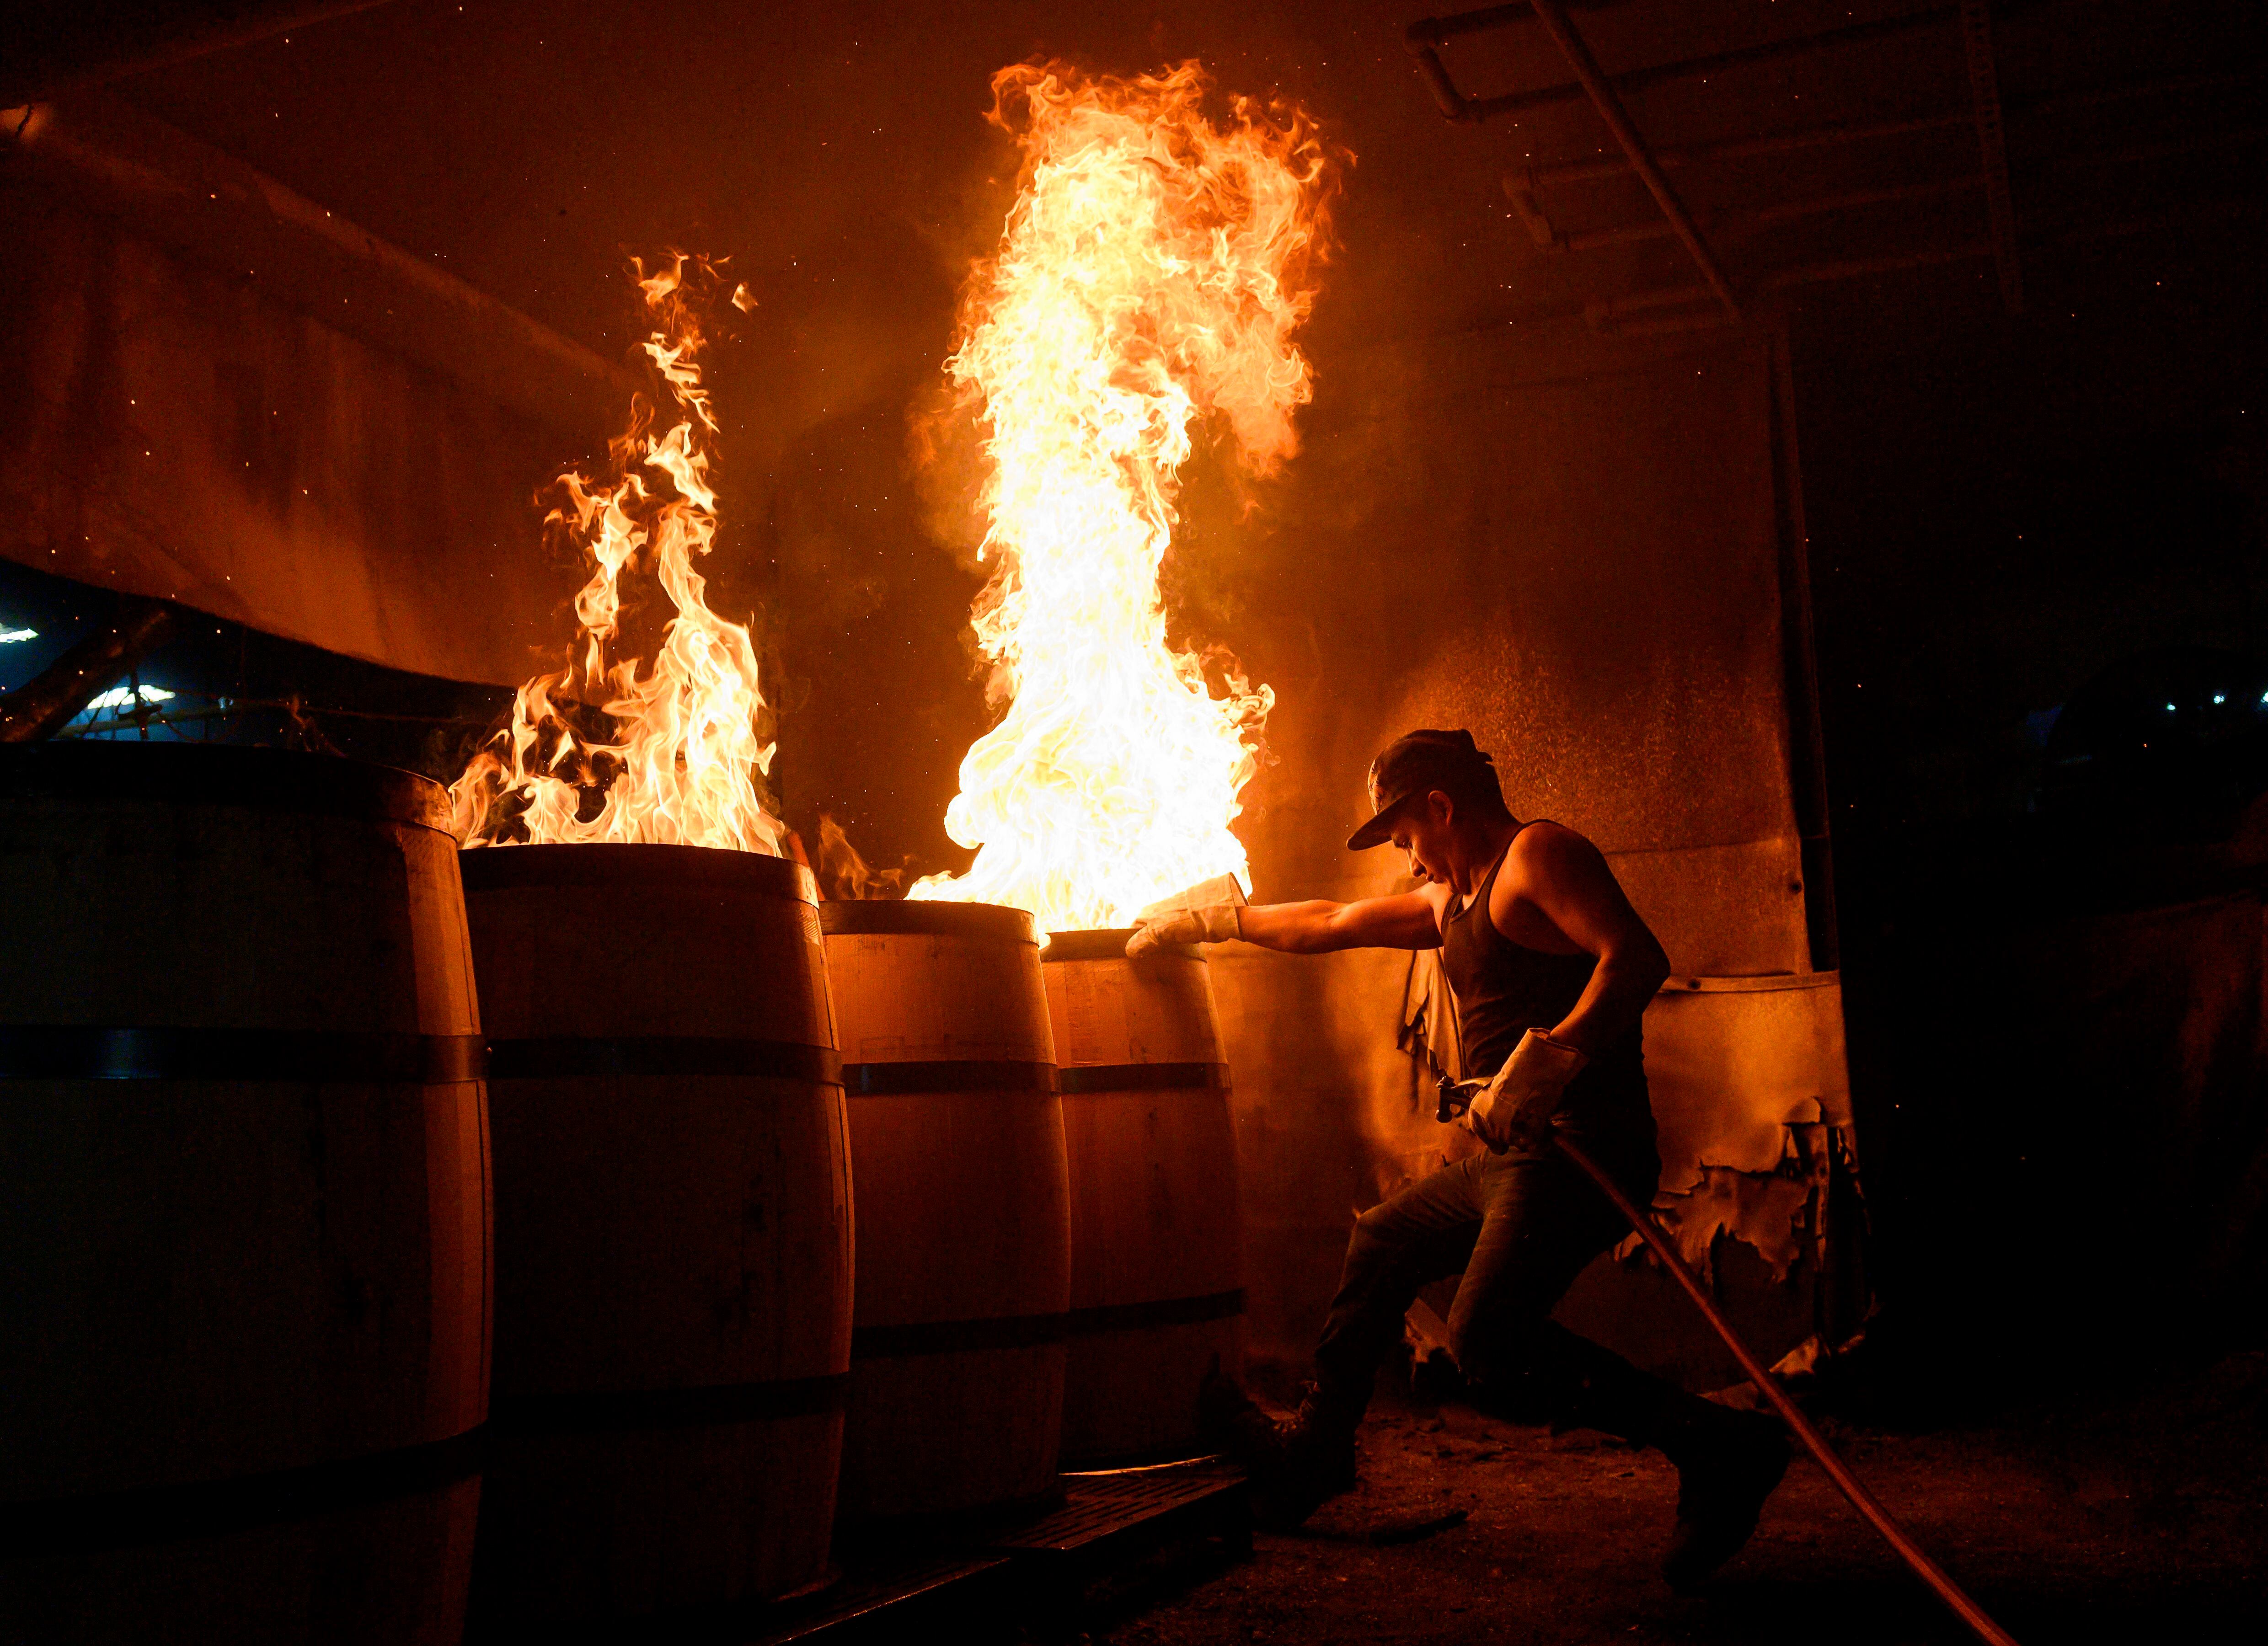 Las barricas de roble carbonizado proporcionan al ‘bourbon’, whisky de maíz típico de Kentucky, su característico color y aroma.  